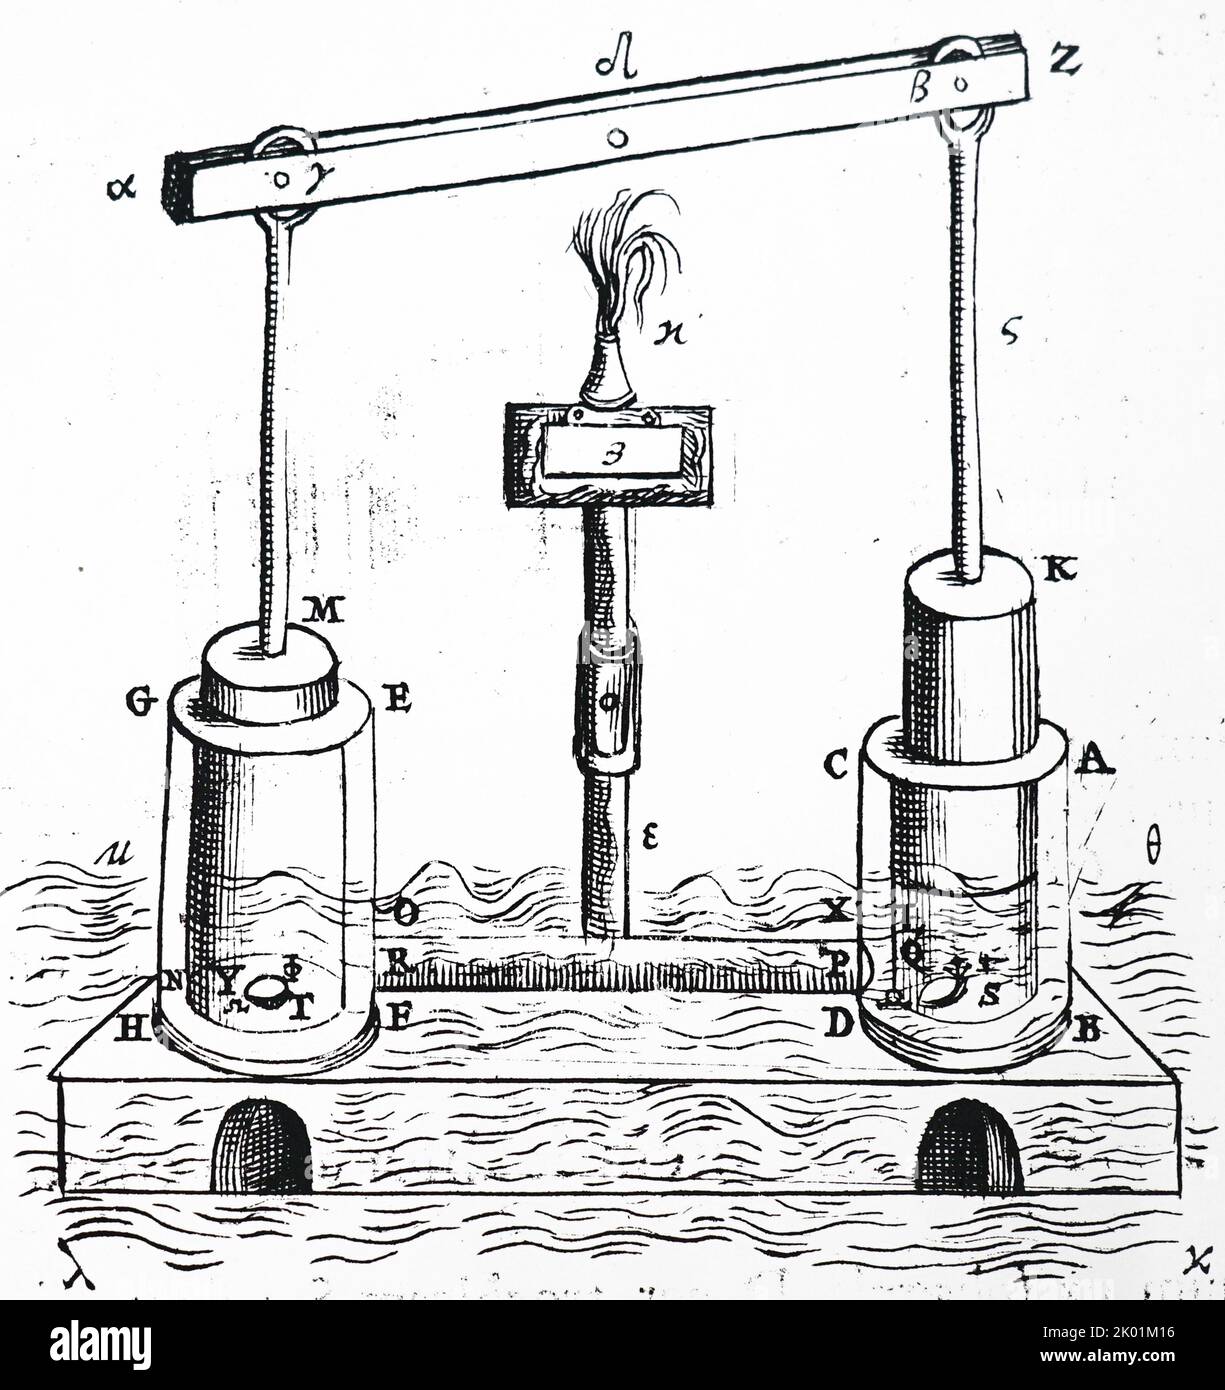 Manómetro de presión de vacío, 0 ~ -30inHg 0 ~ -1bar 1.969 in Mini Dial Air  Well Pump Manómetro de presión para agua, aceite y aire